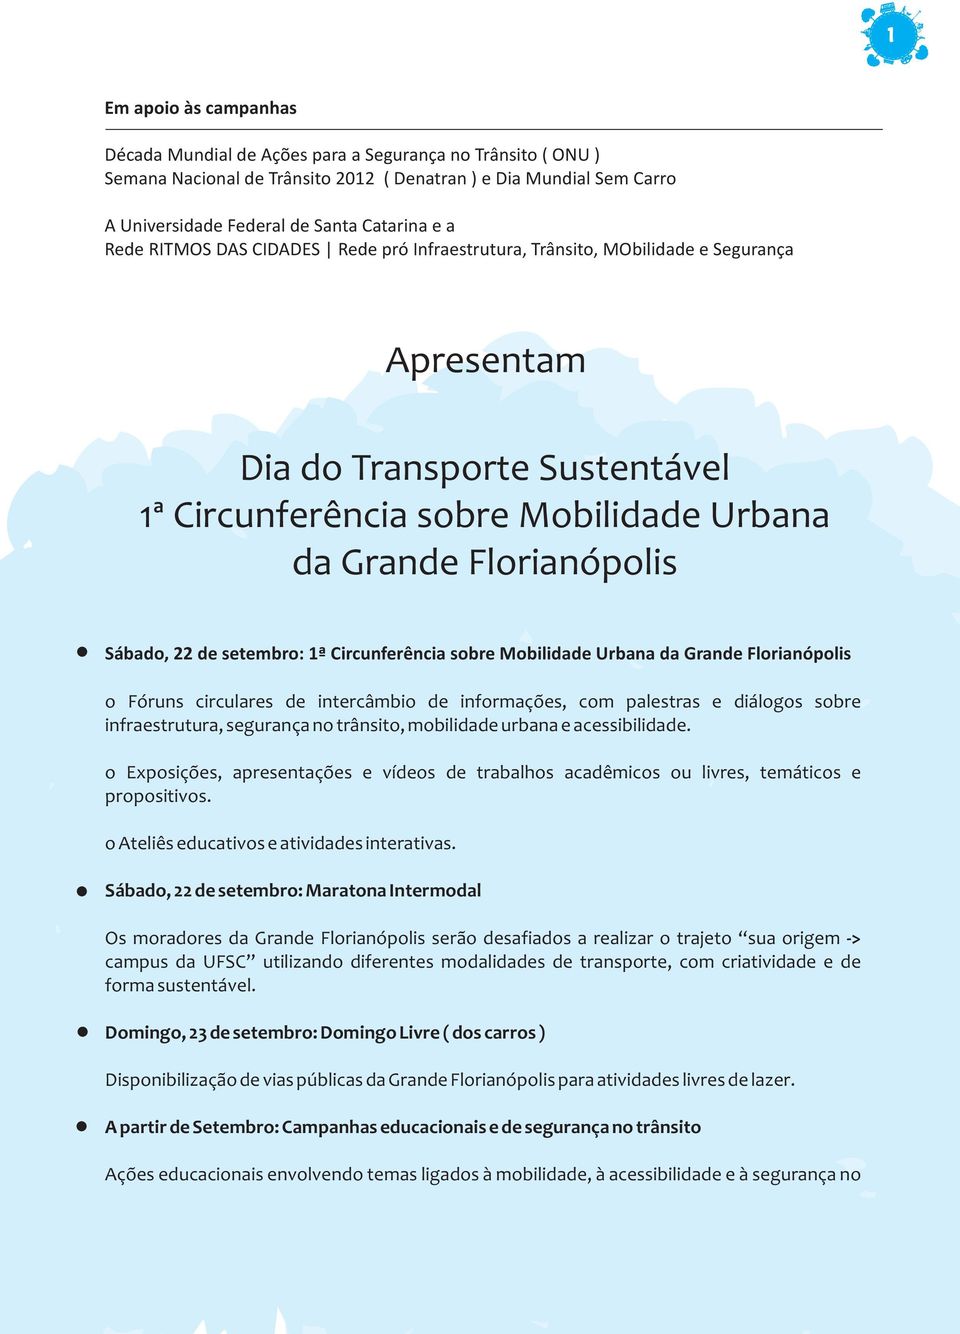 de setembro: 1ª Circunferência sobre Mobilidade Urbana da Grande Florianópolis o Fóruns circulares de intercâmbio de informações, com palestras e diálogos sobre infraestrutura, segurança no trânsito,